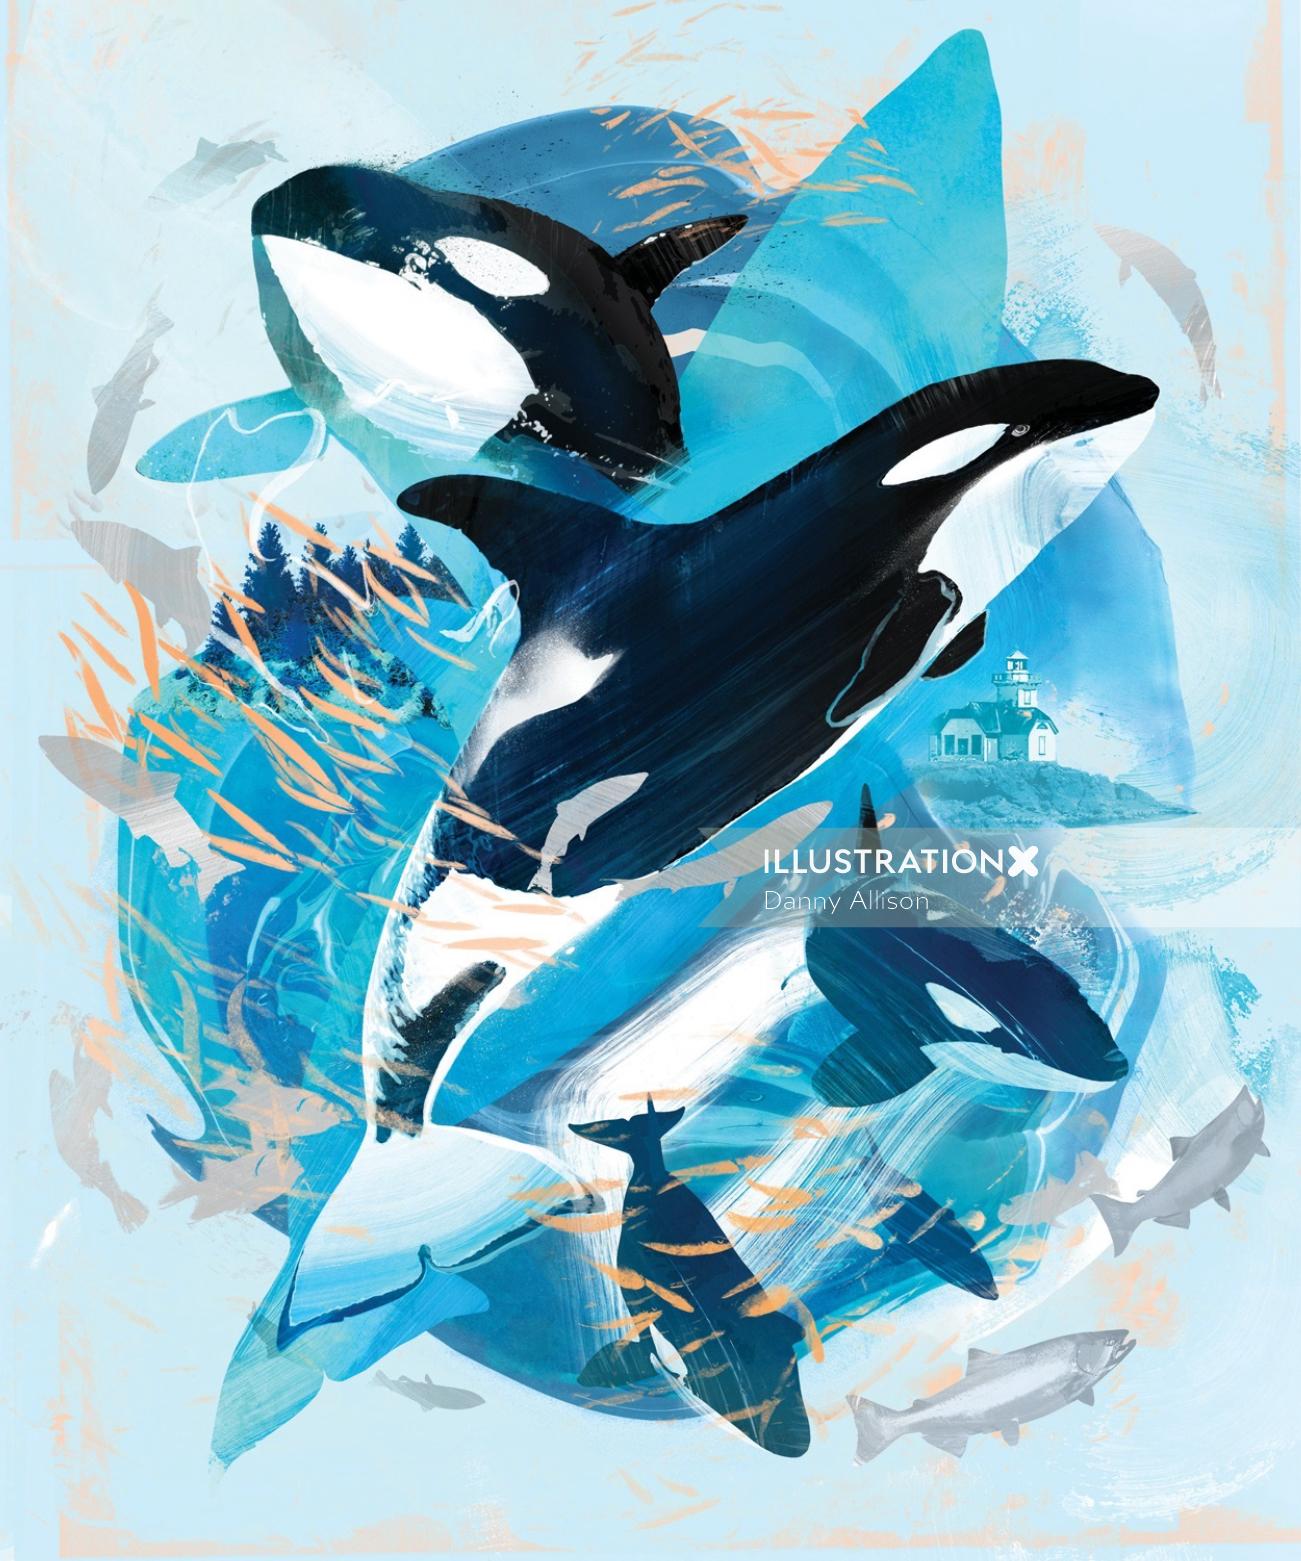 シアトル水族館の捕鯨を促進するアートワーク